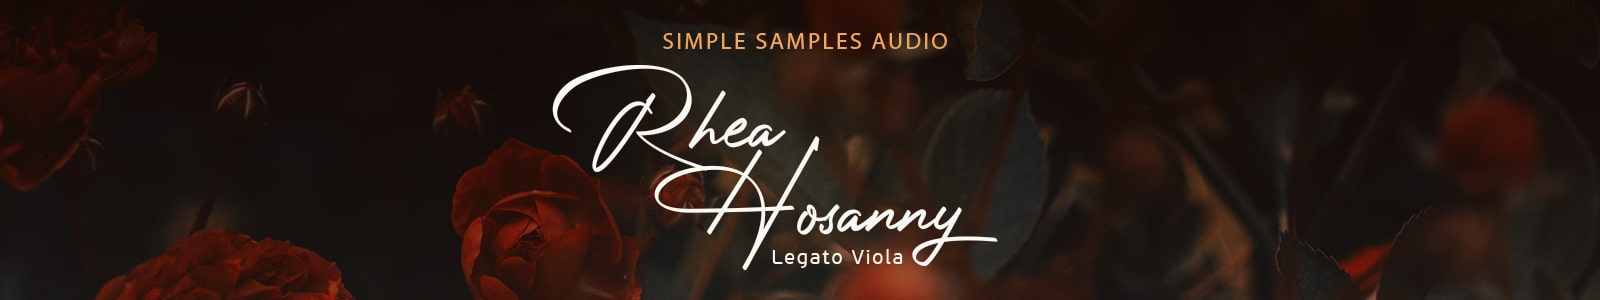 rhea hosanny legato viola